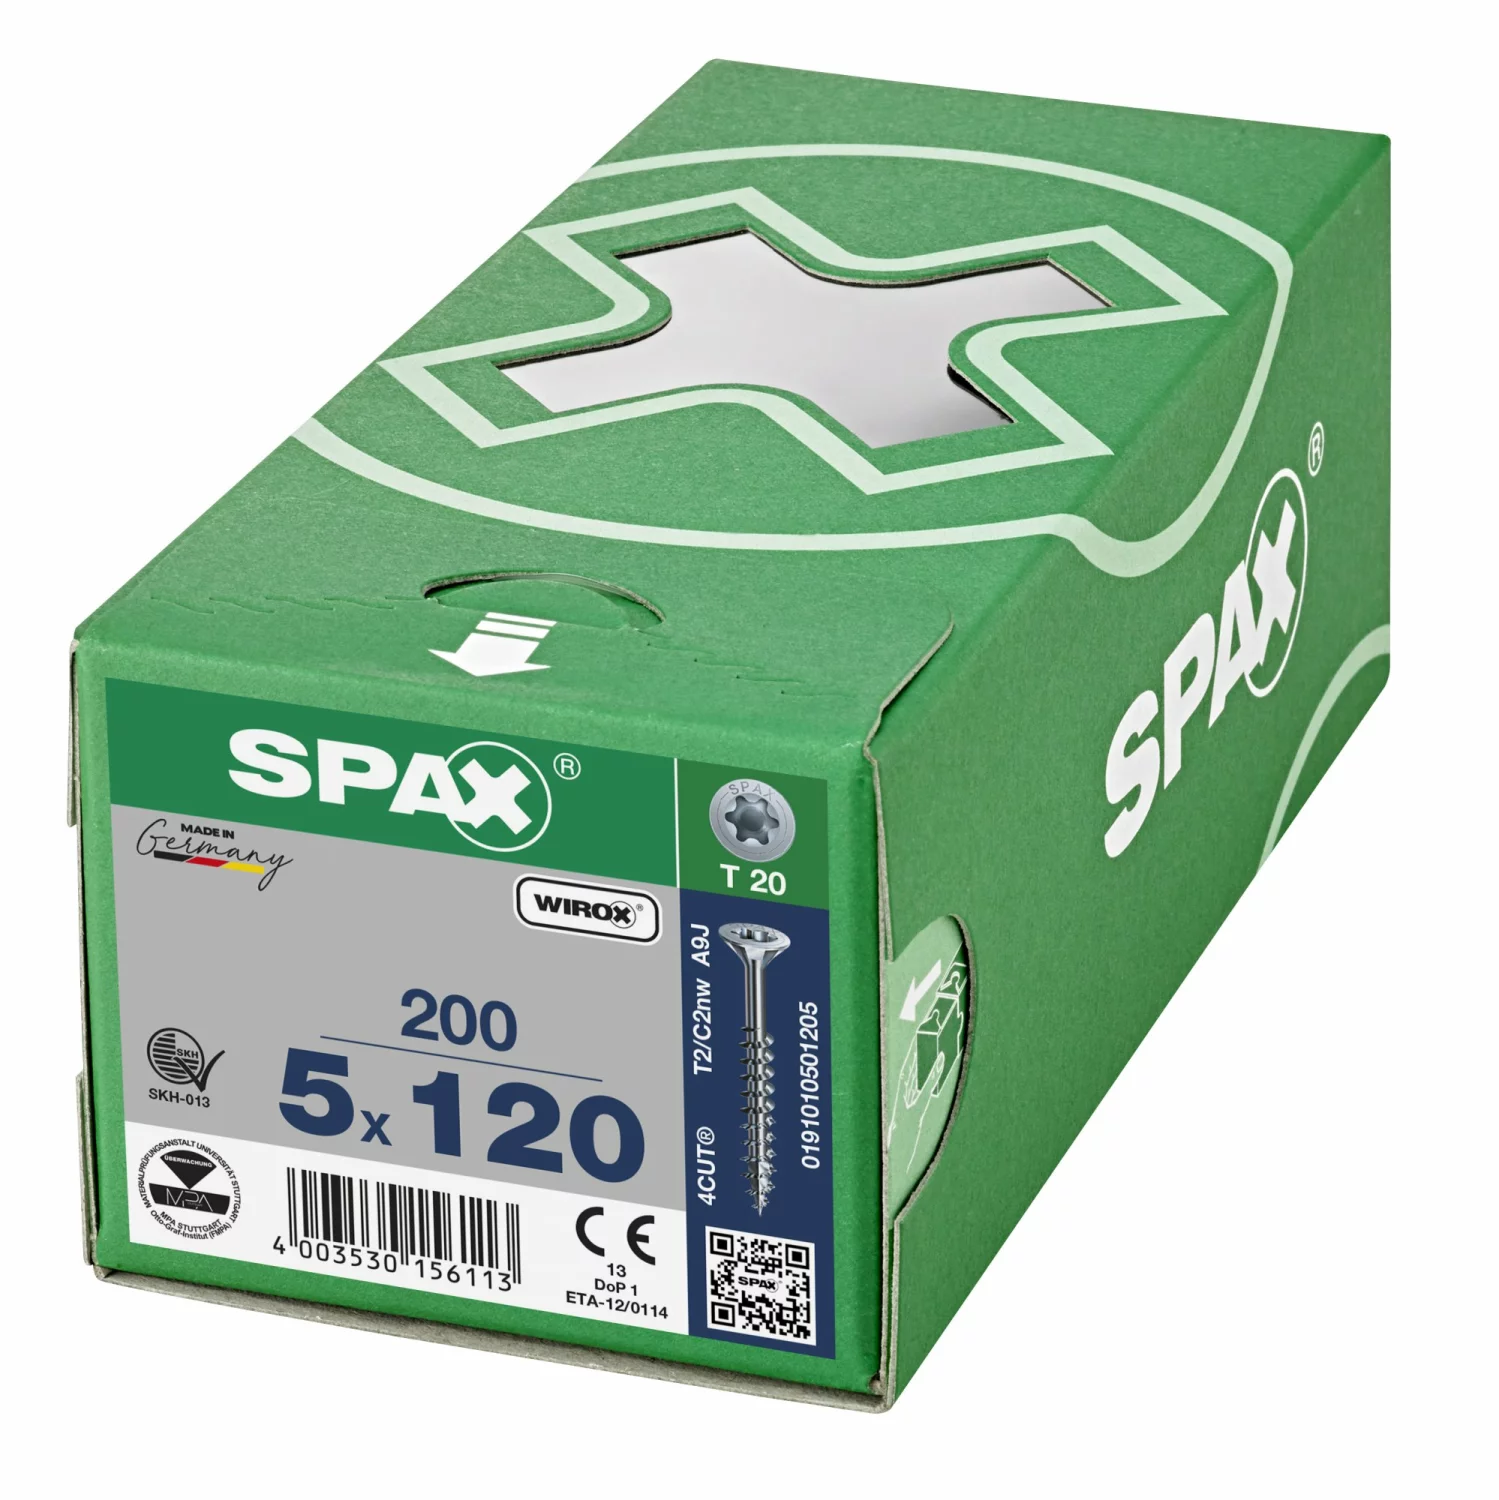 SPAX 191010501205 Universele schroef, Verzonken kop, 5 x 120, Deeldraad, T-STAR plus T20 - WIROX - 200 stuks